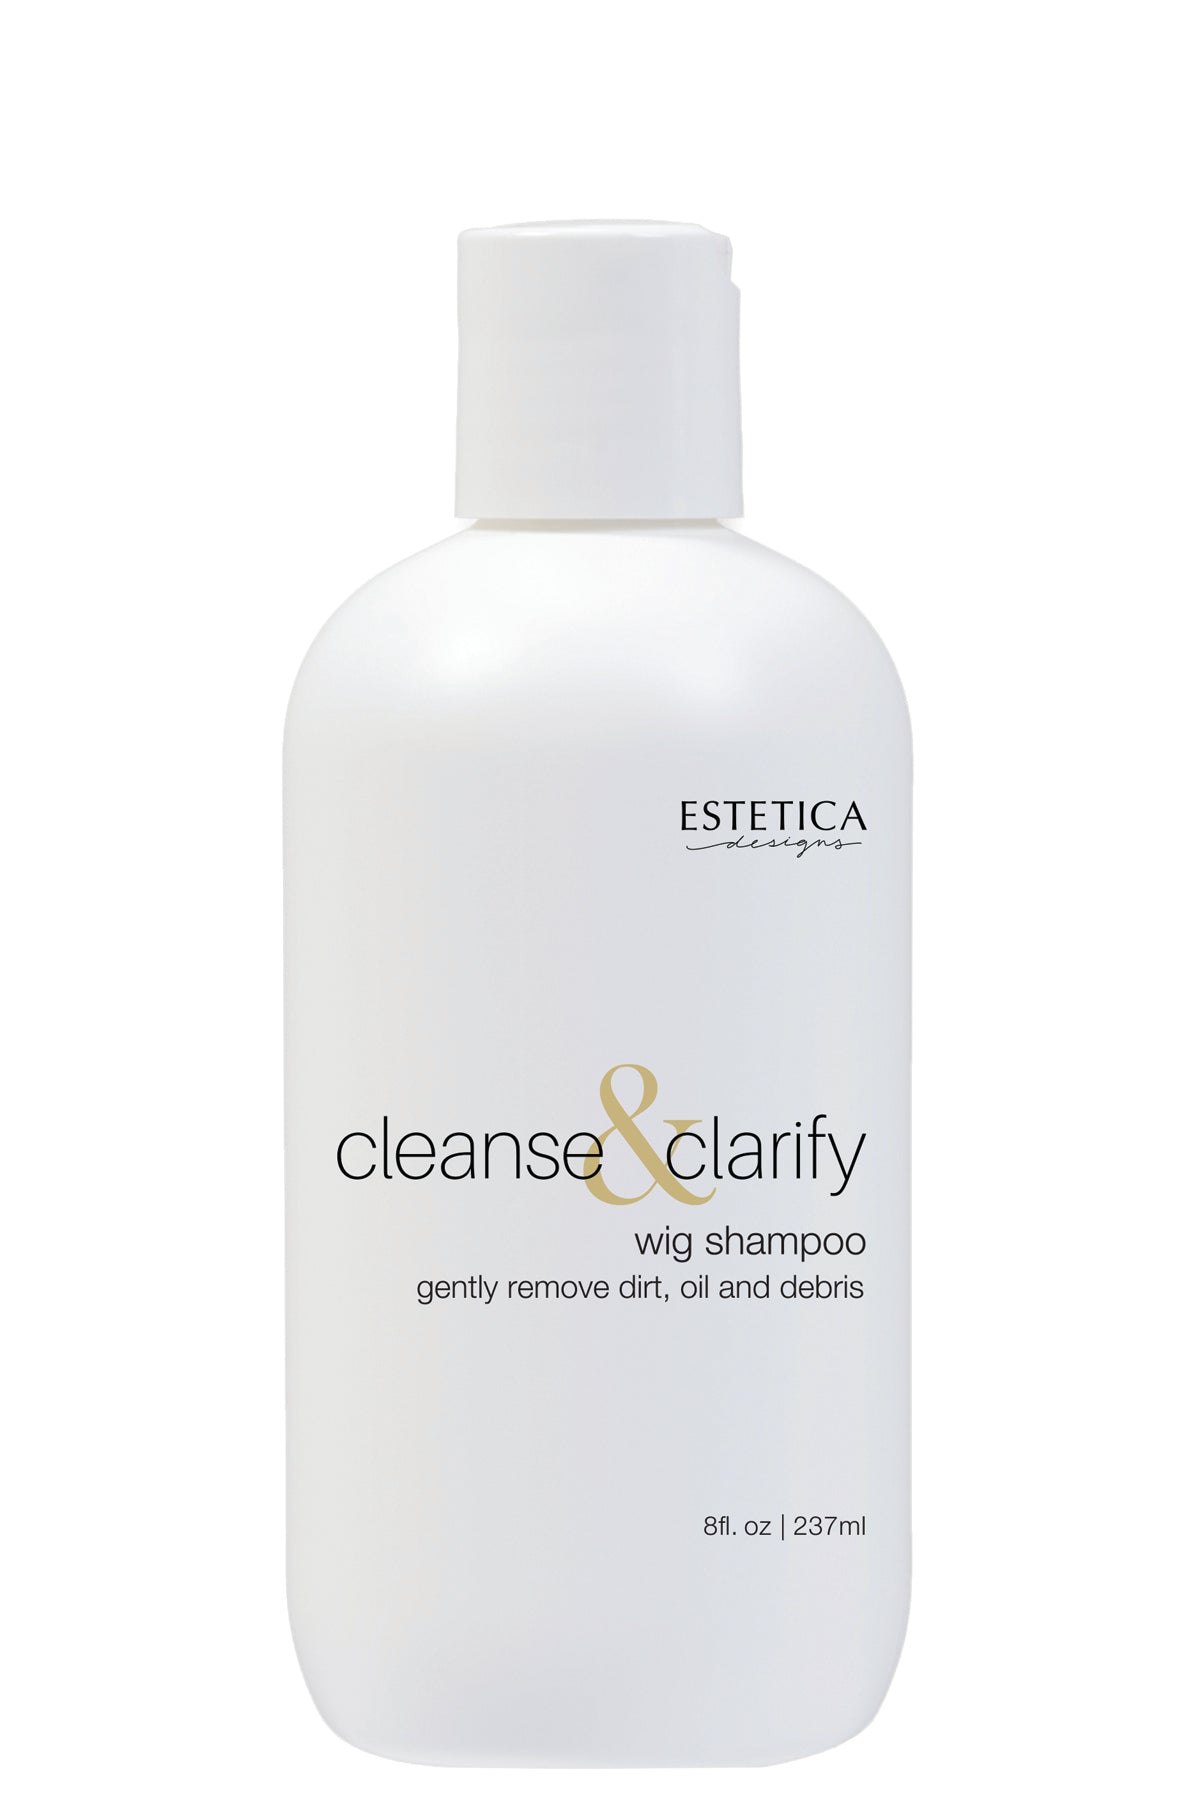 Cleanse & Clarify Wig Shampoo